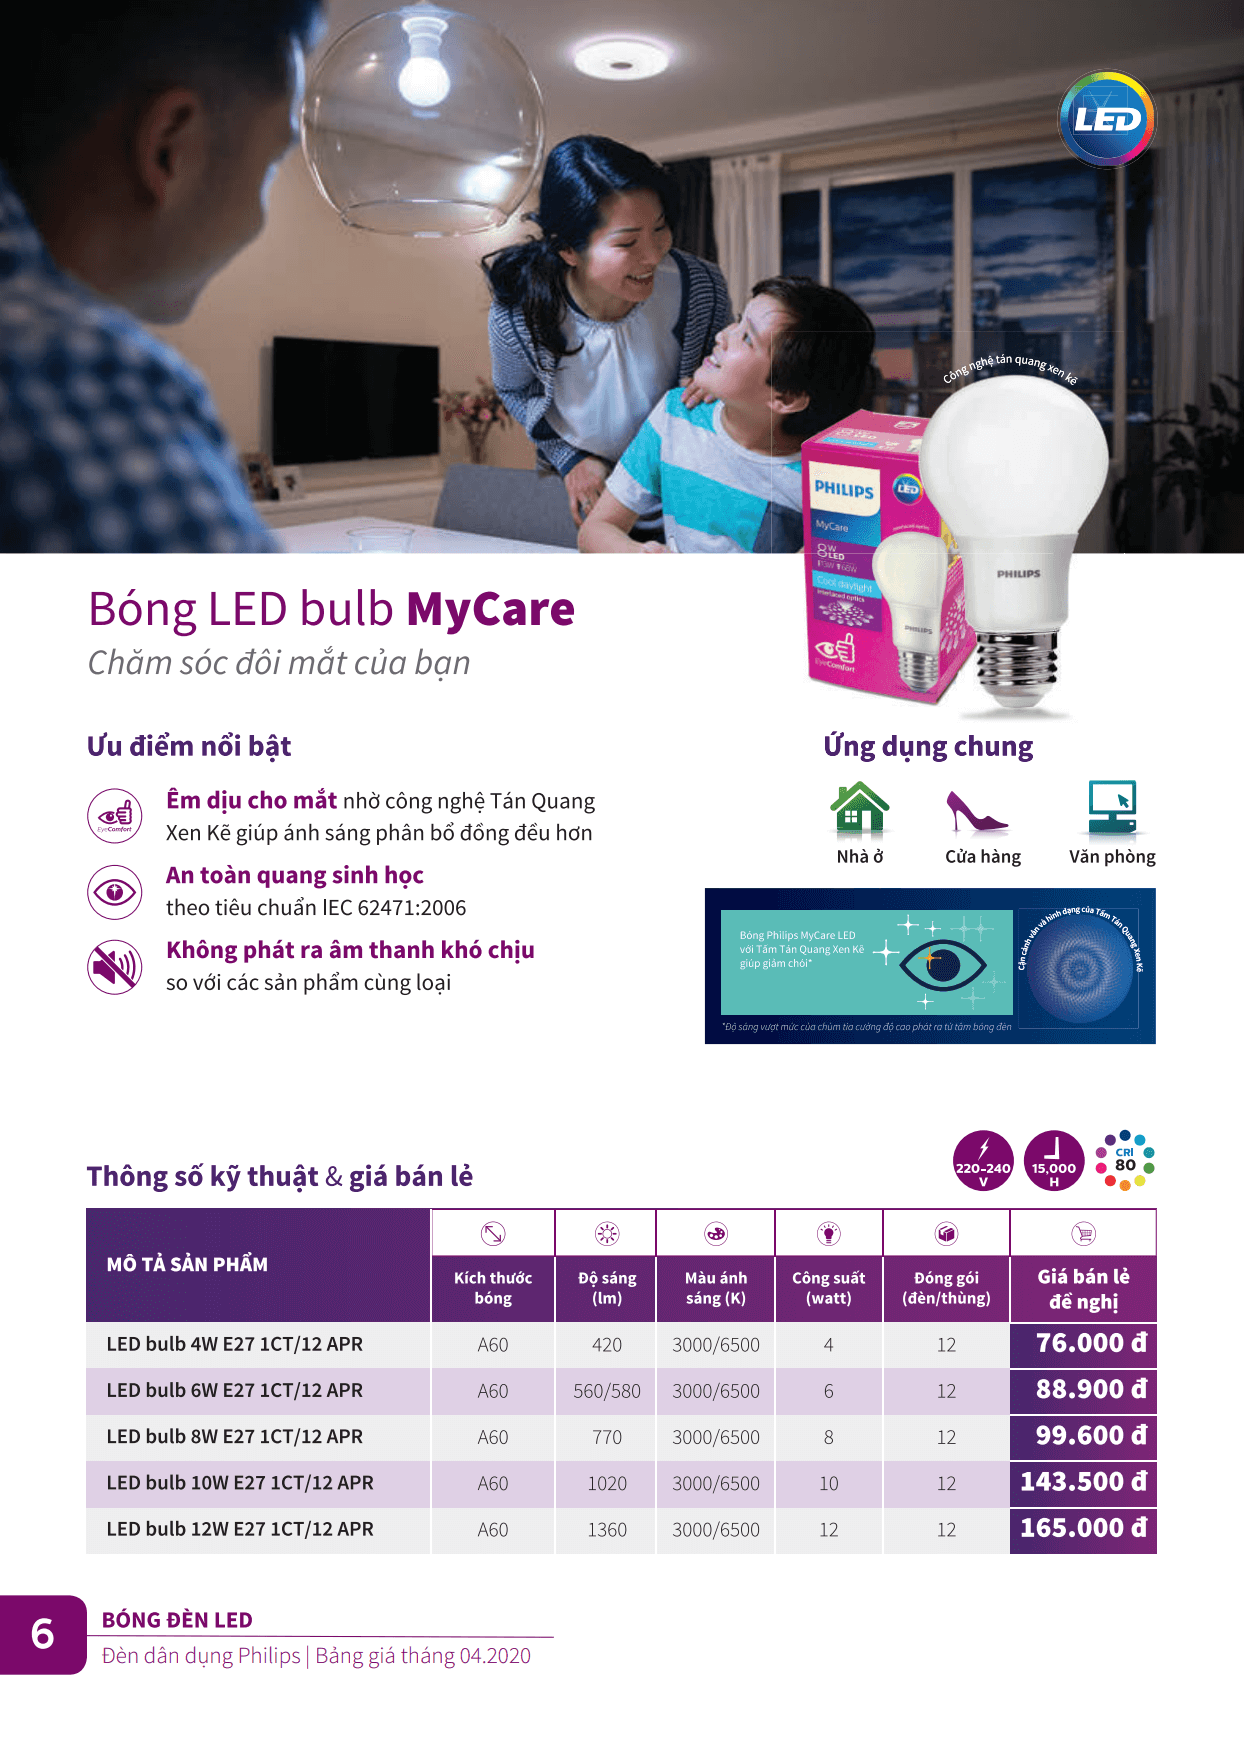 Ưu điểm, thông số kỹ thuật và giá bán lẻ bóng led Philips Bulb Mycare